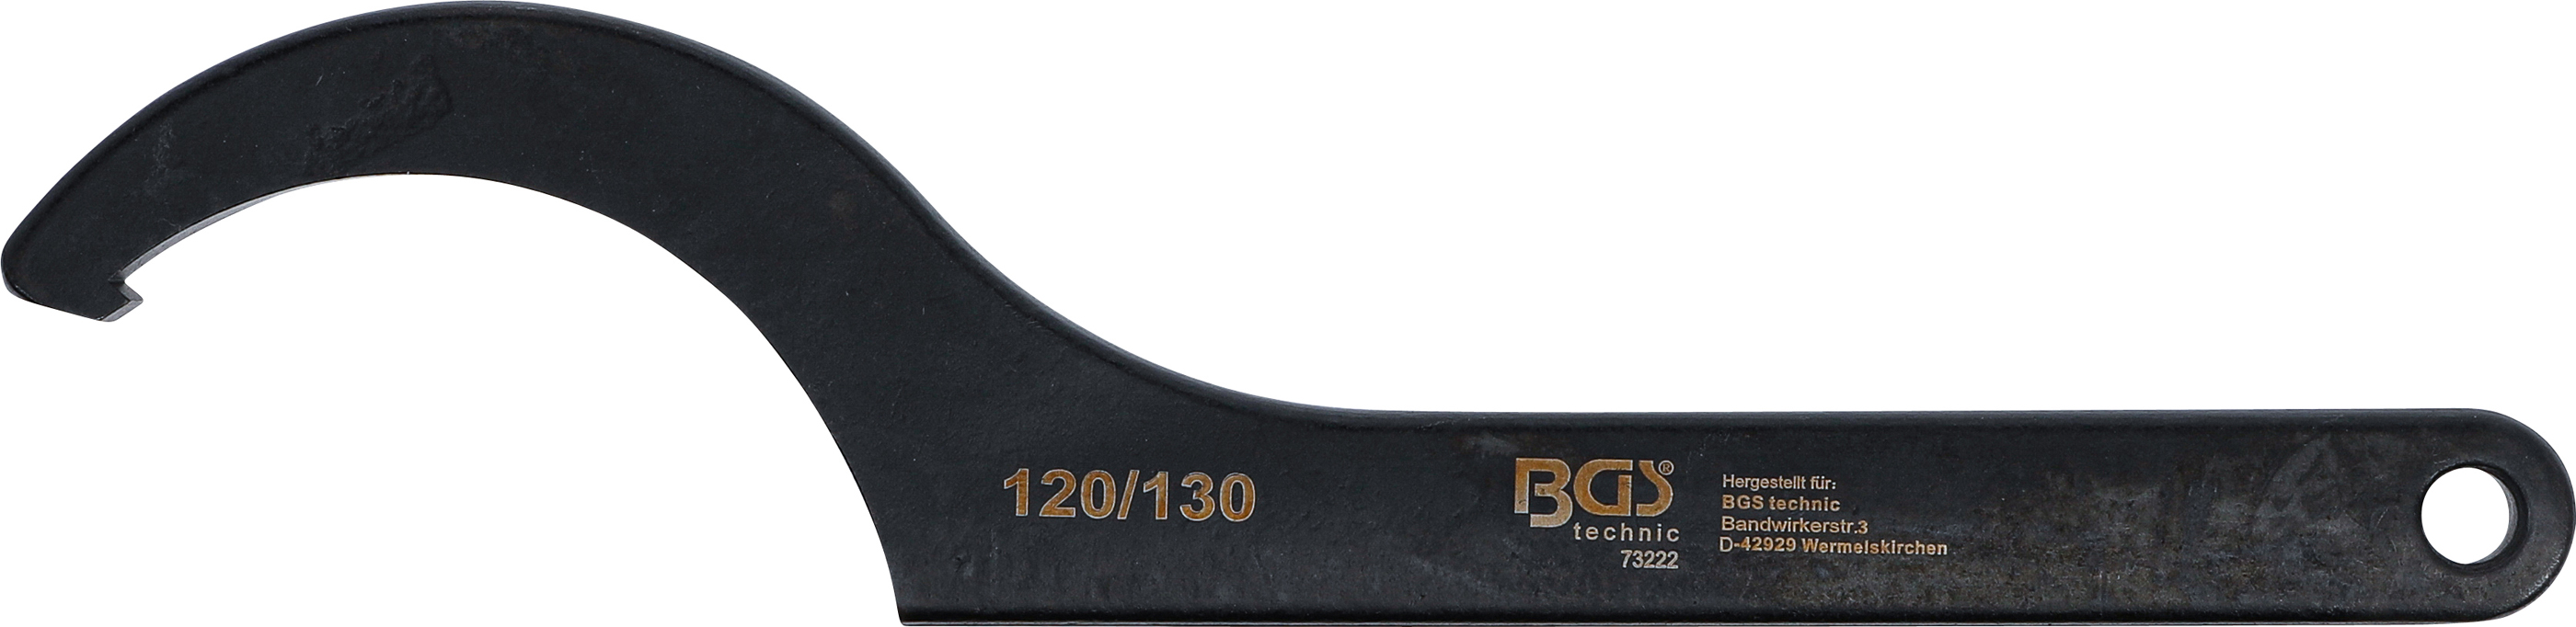 BGS Hakenschlüssel mit Nase | 120 - 130 mm